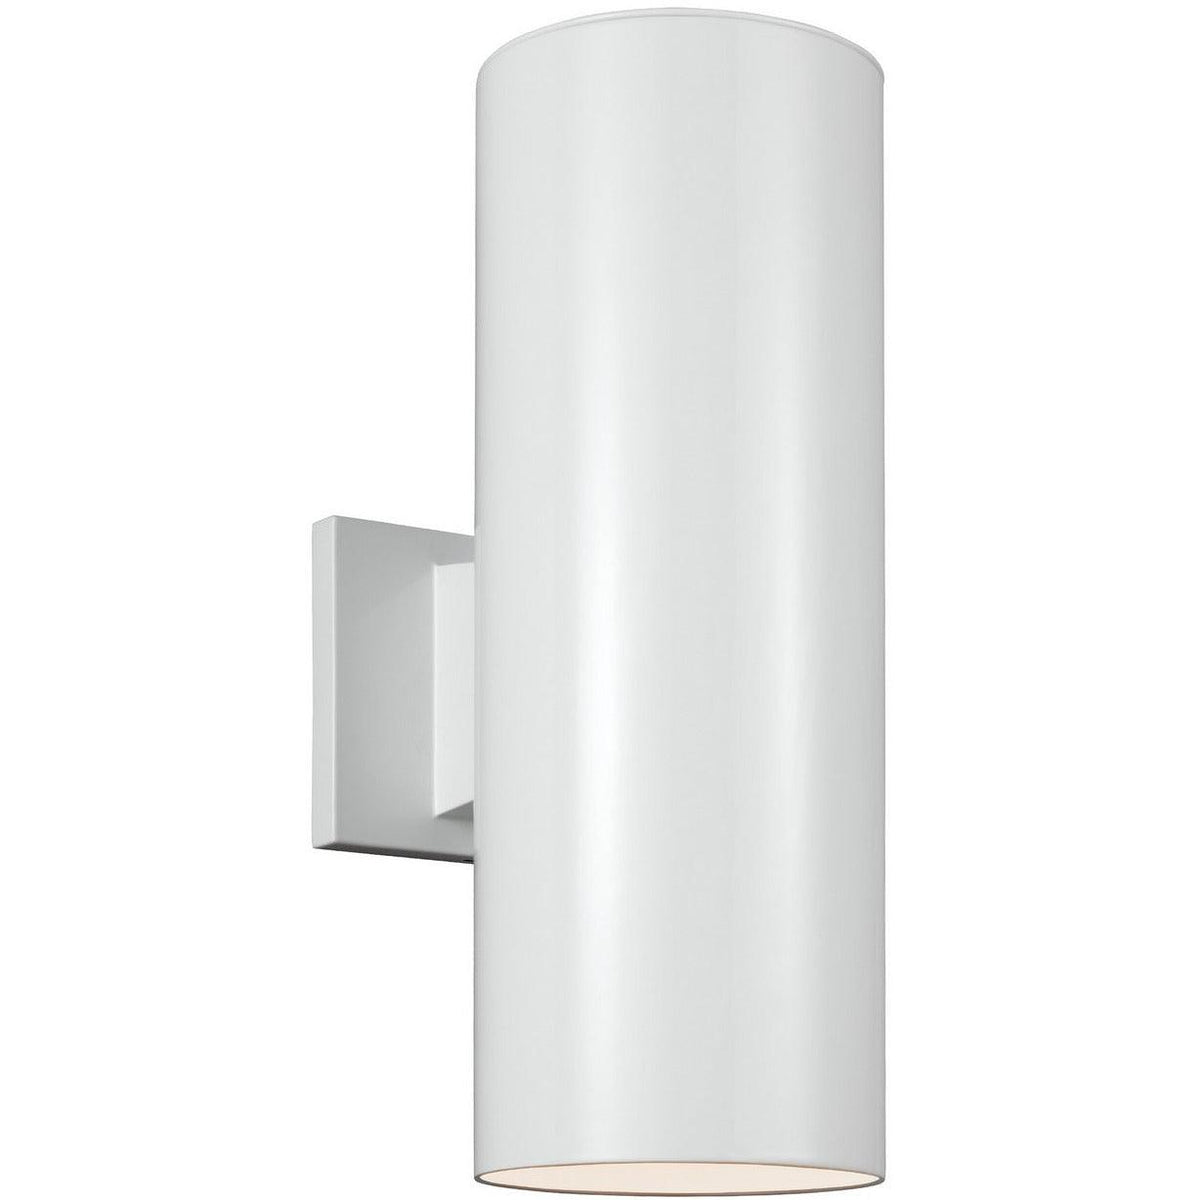 Generation Lighting - Outdoor Cylinders Outdoor Wall Lantern - 8313901EN3-15 | Montreal Lighting & Hardware